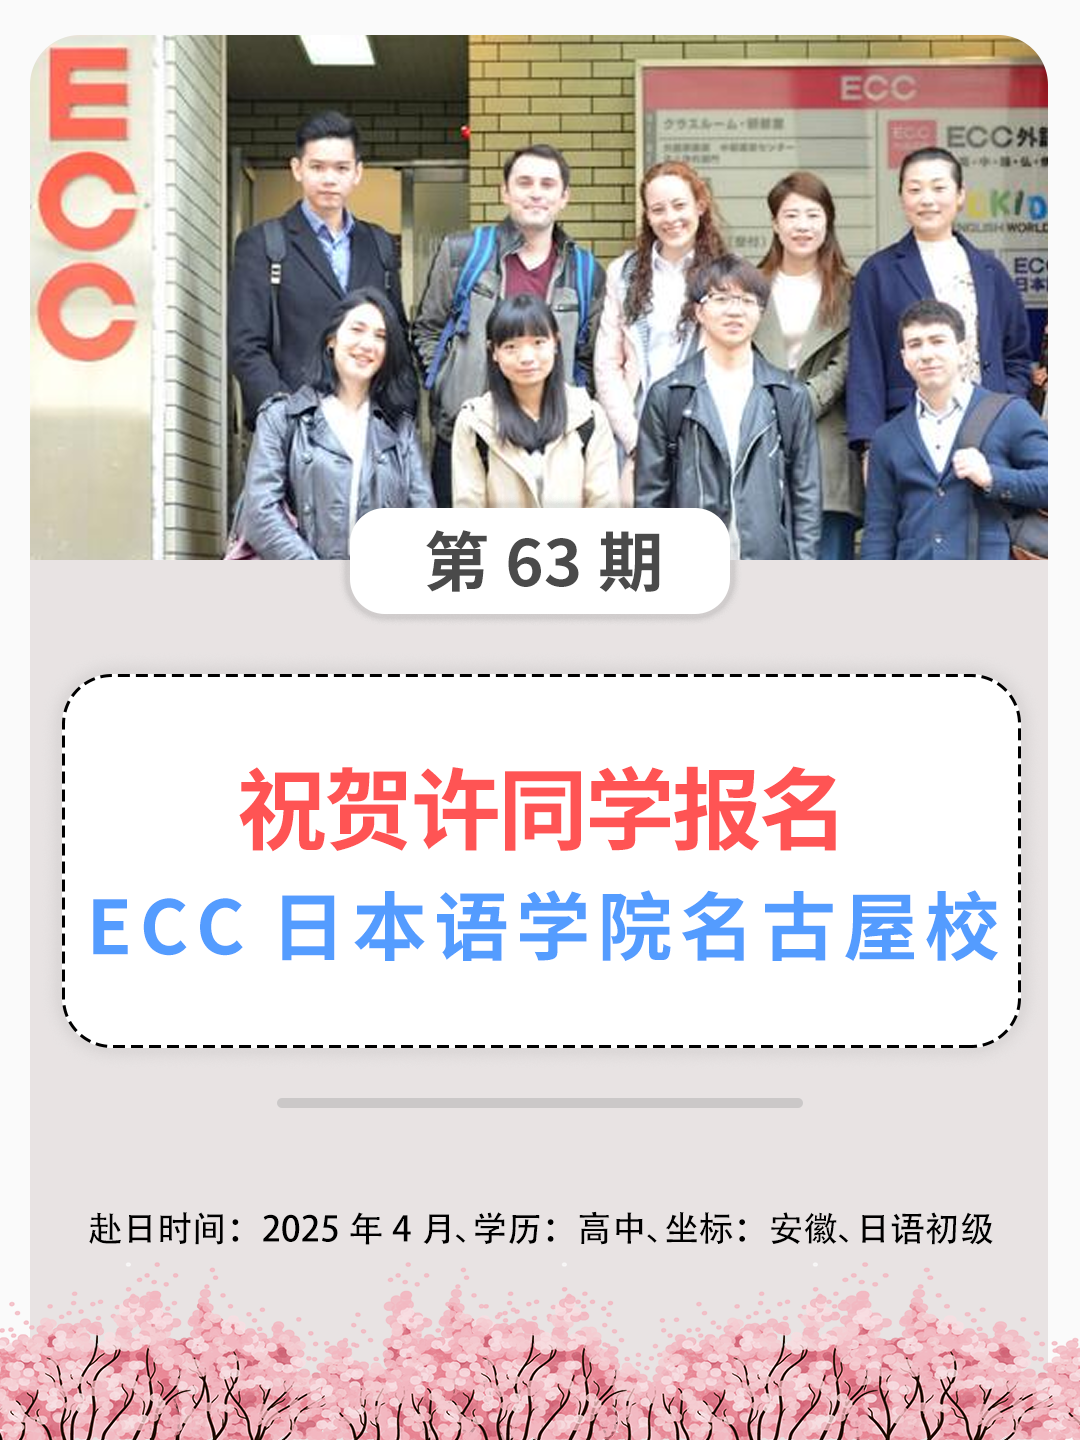 祝贺许同学报名ECC日本语学院名古屋校